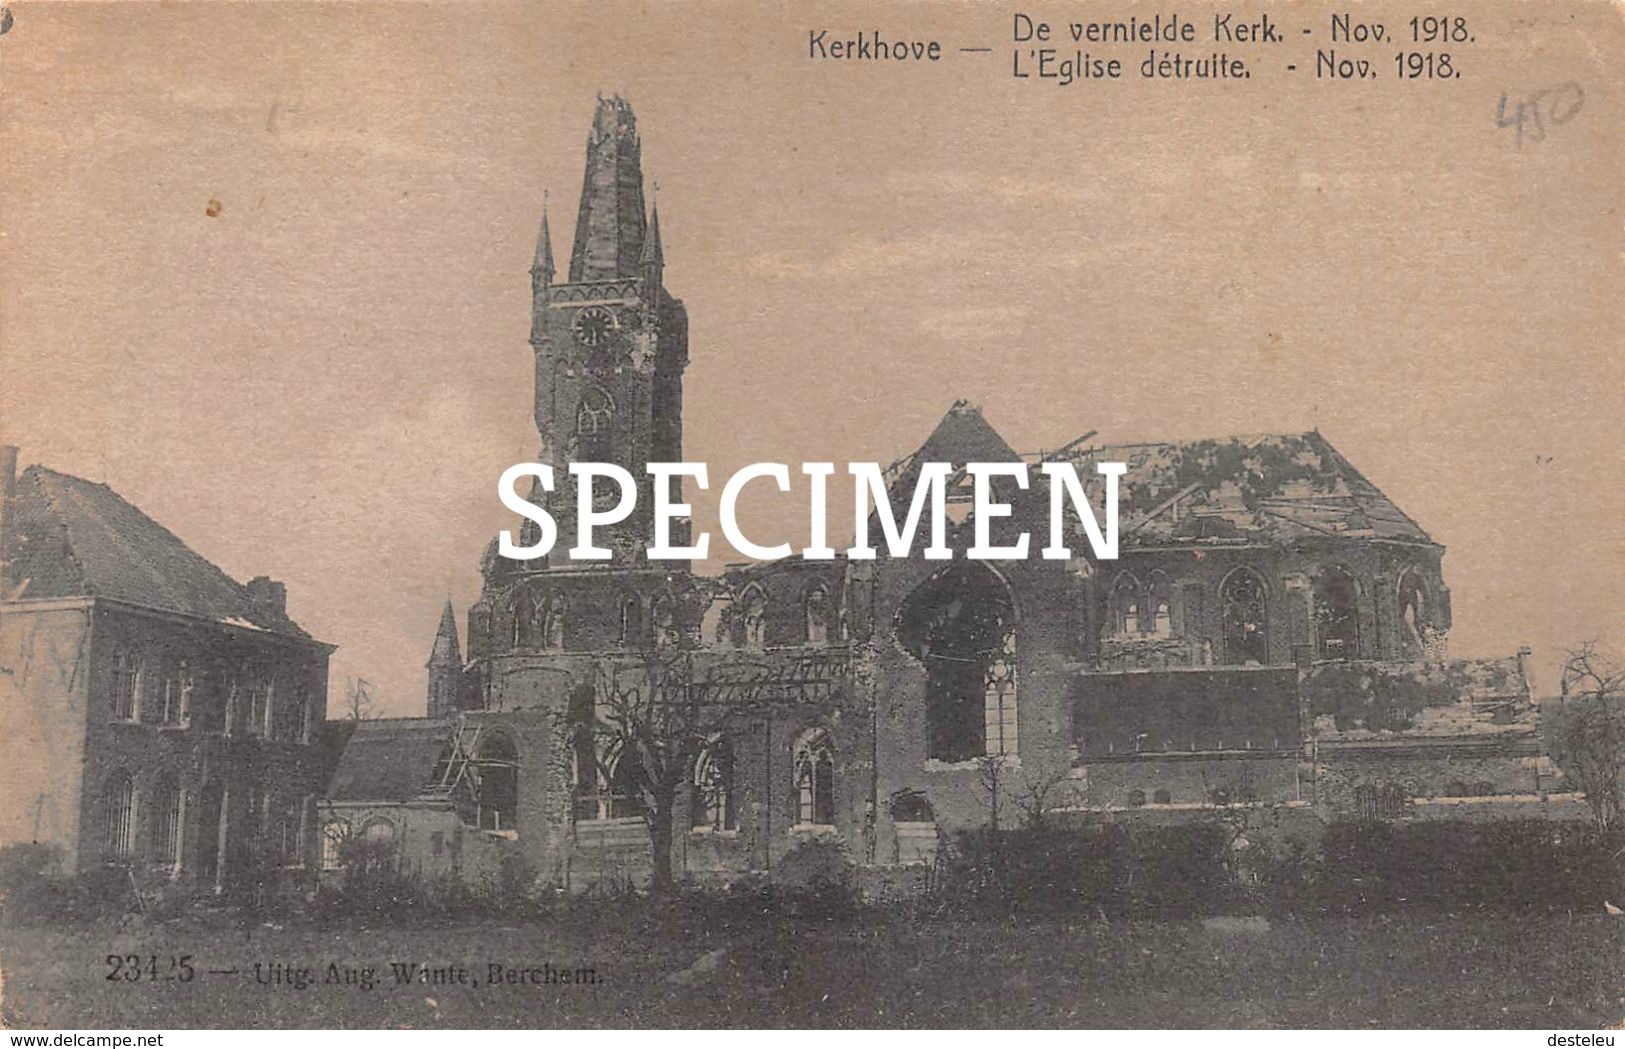 De Vernielde Kerk Nov 1918 - Kerkhove - Avelgem